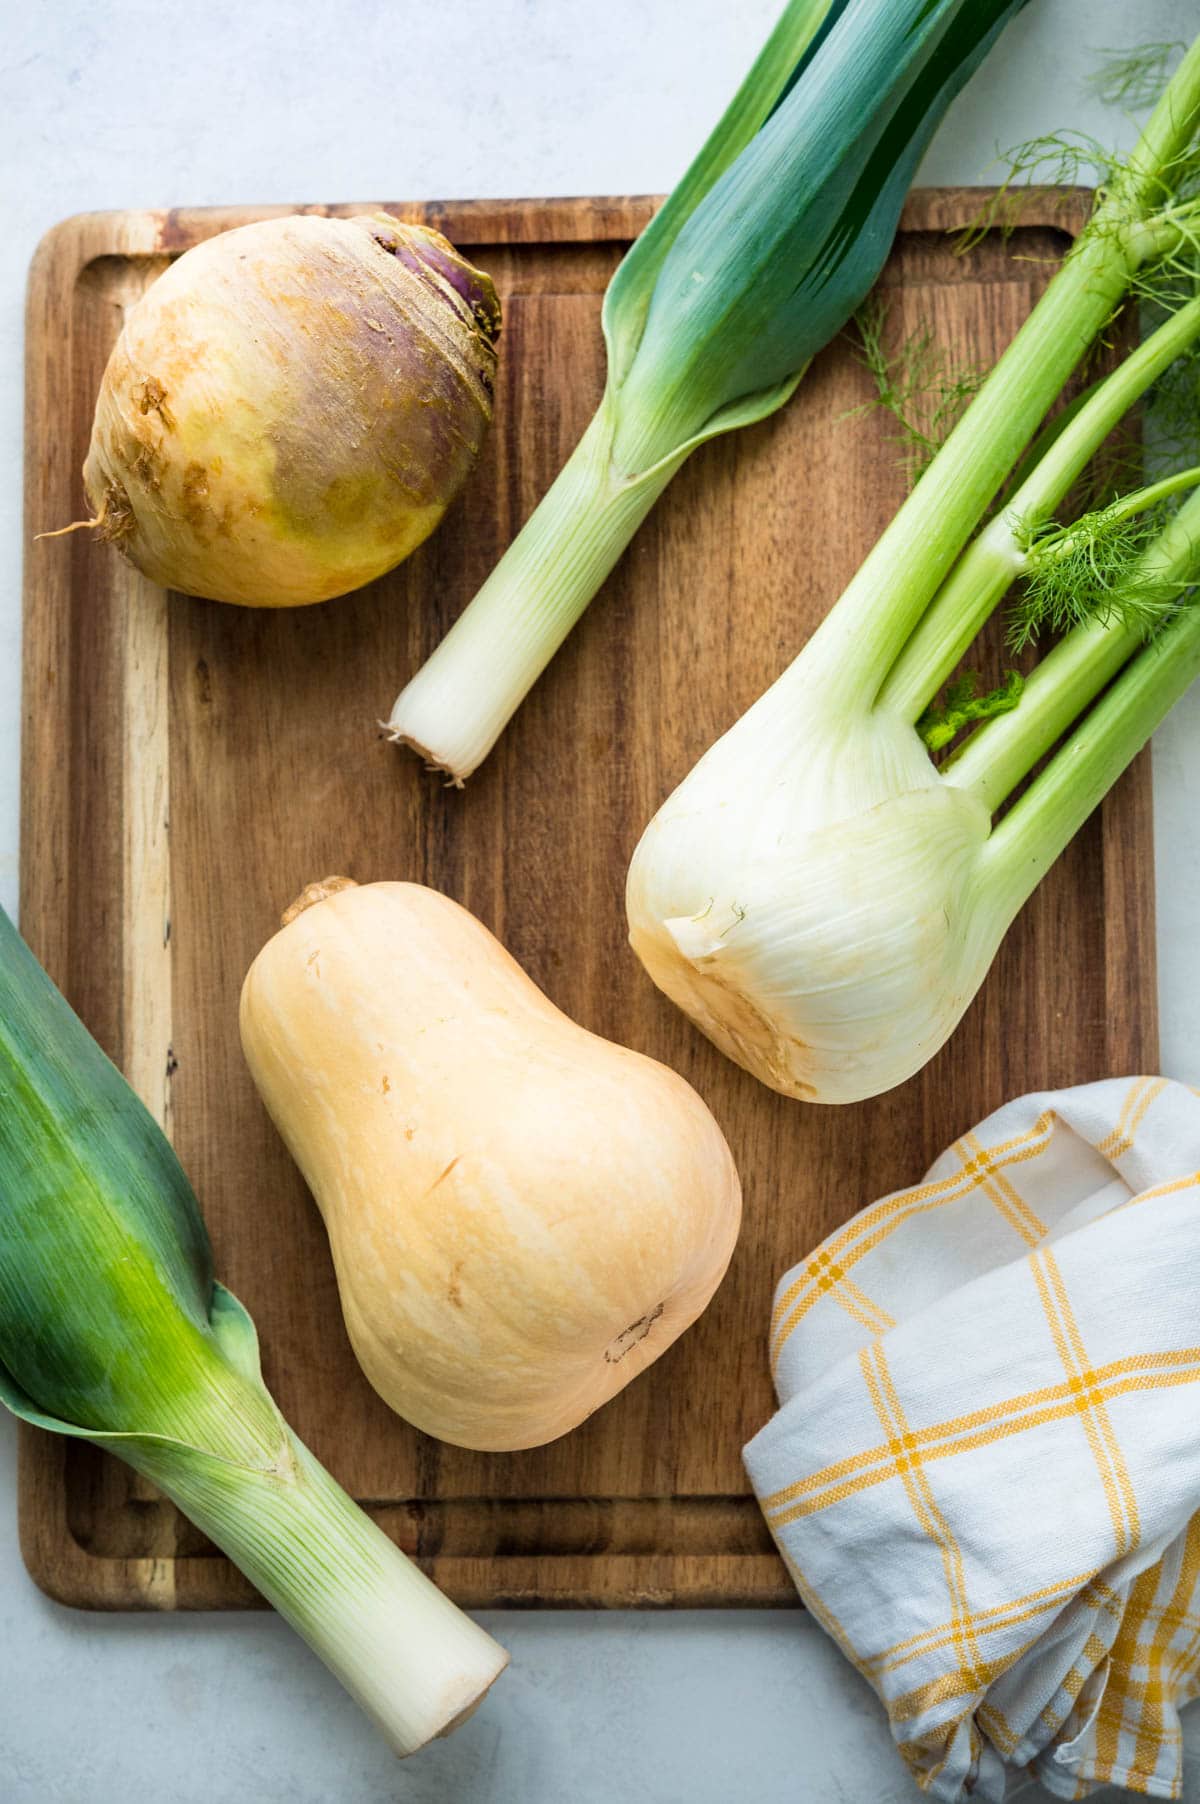 rutabaga, butternut squash, leeks and fennel on a cutting board.